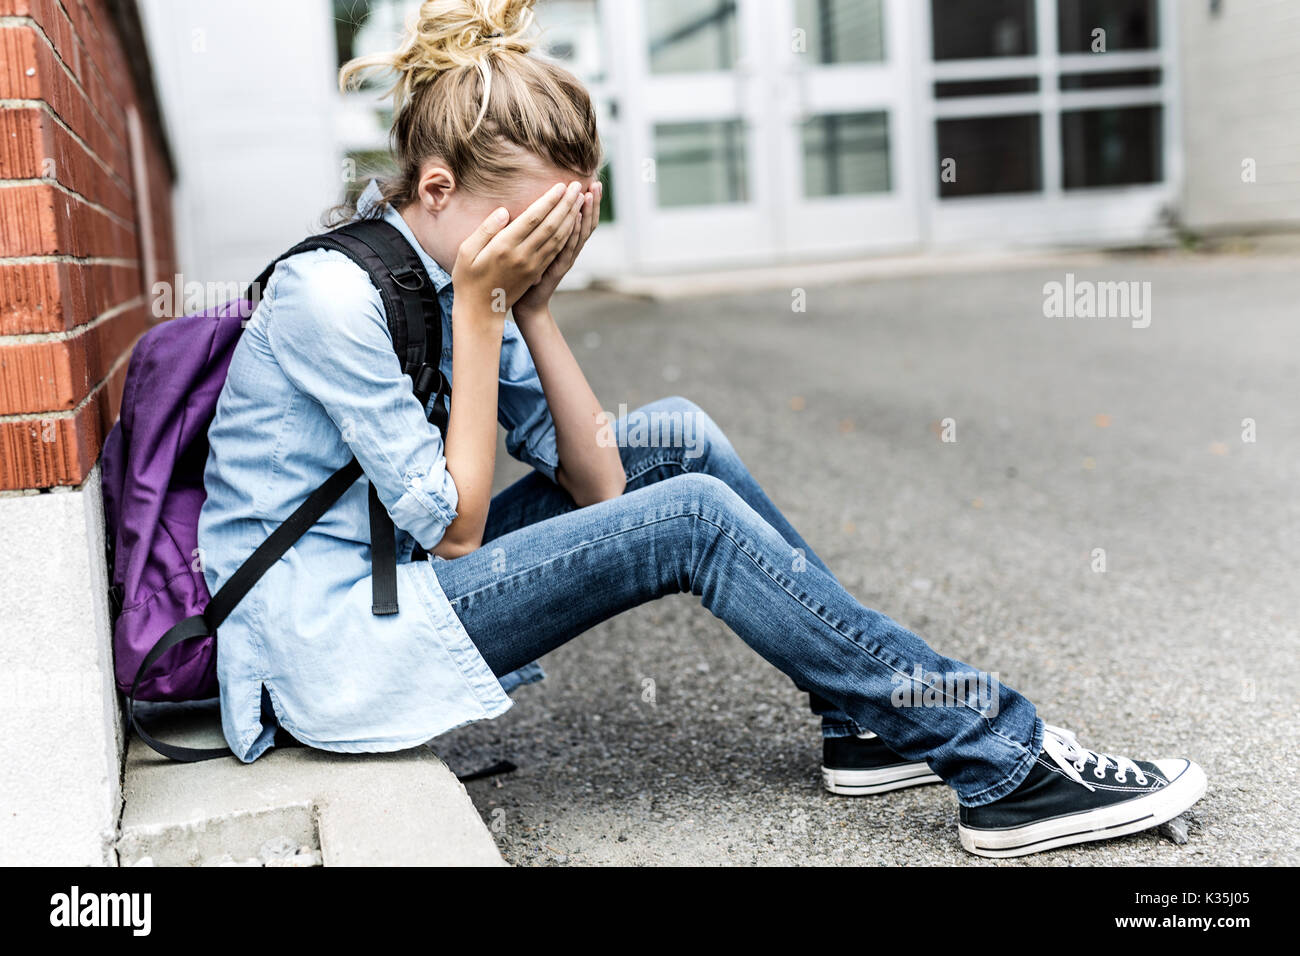 A Unhappy depress Pre teen girl at school Stock Photo - Alamy